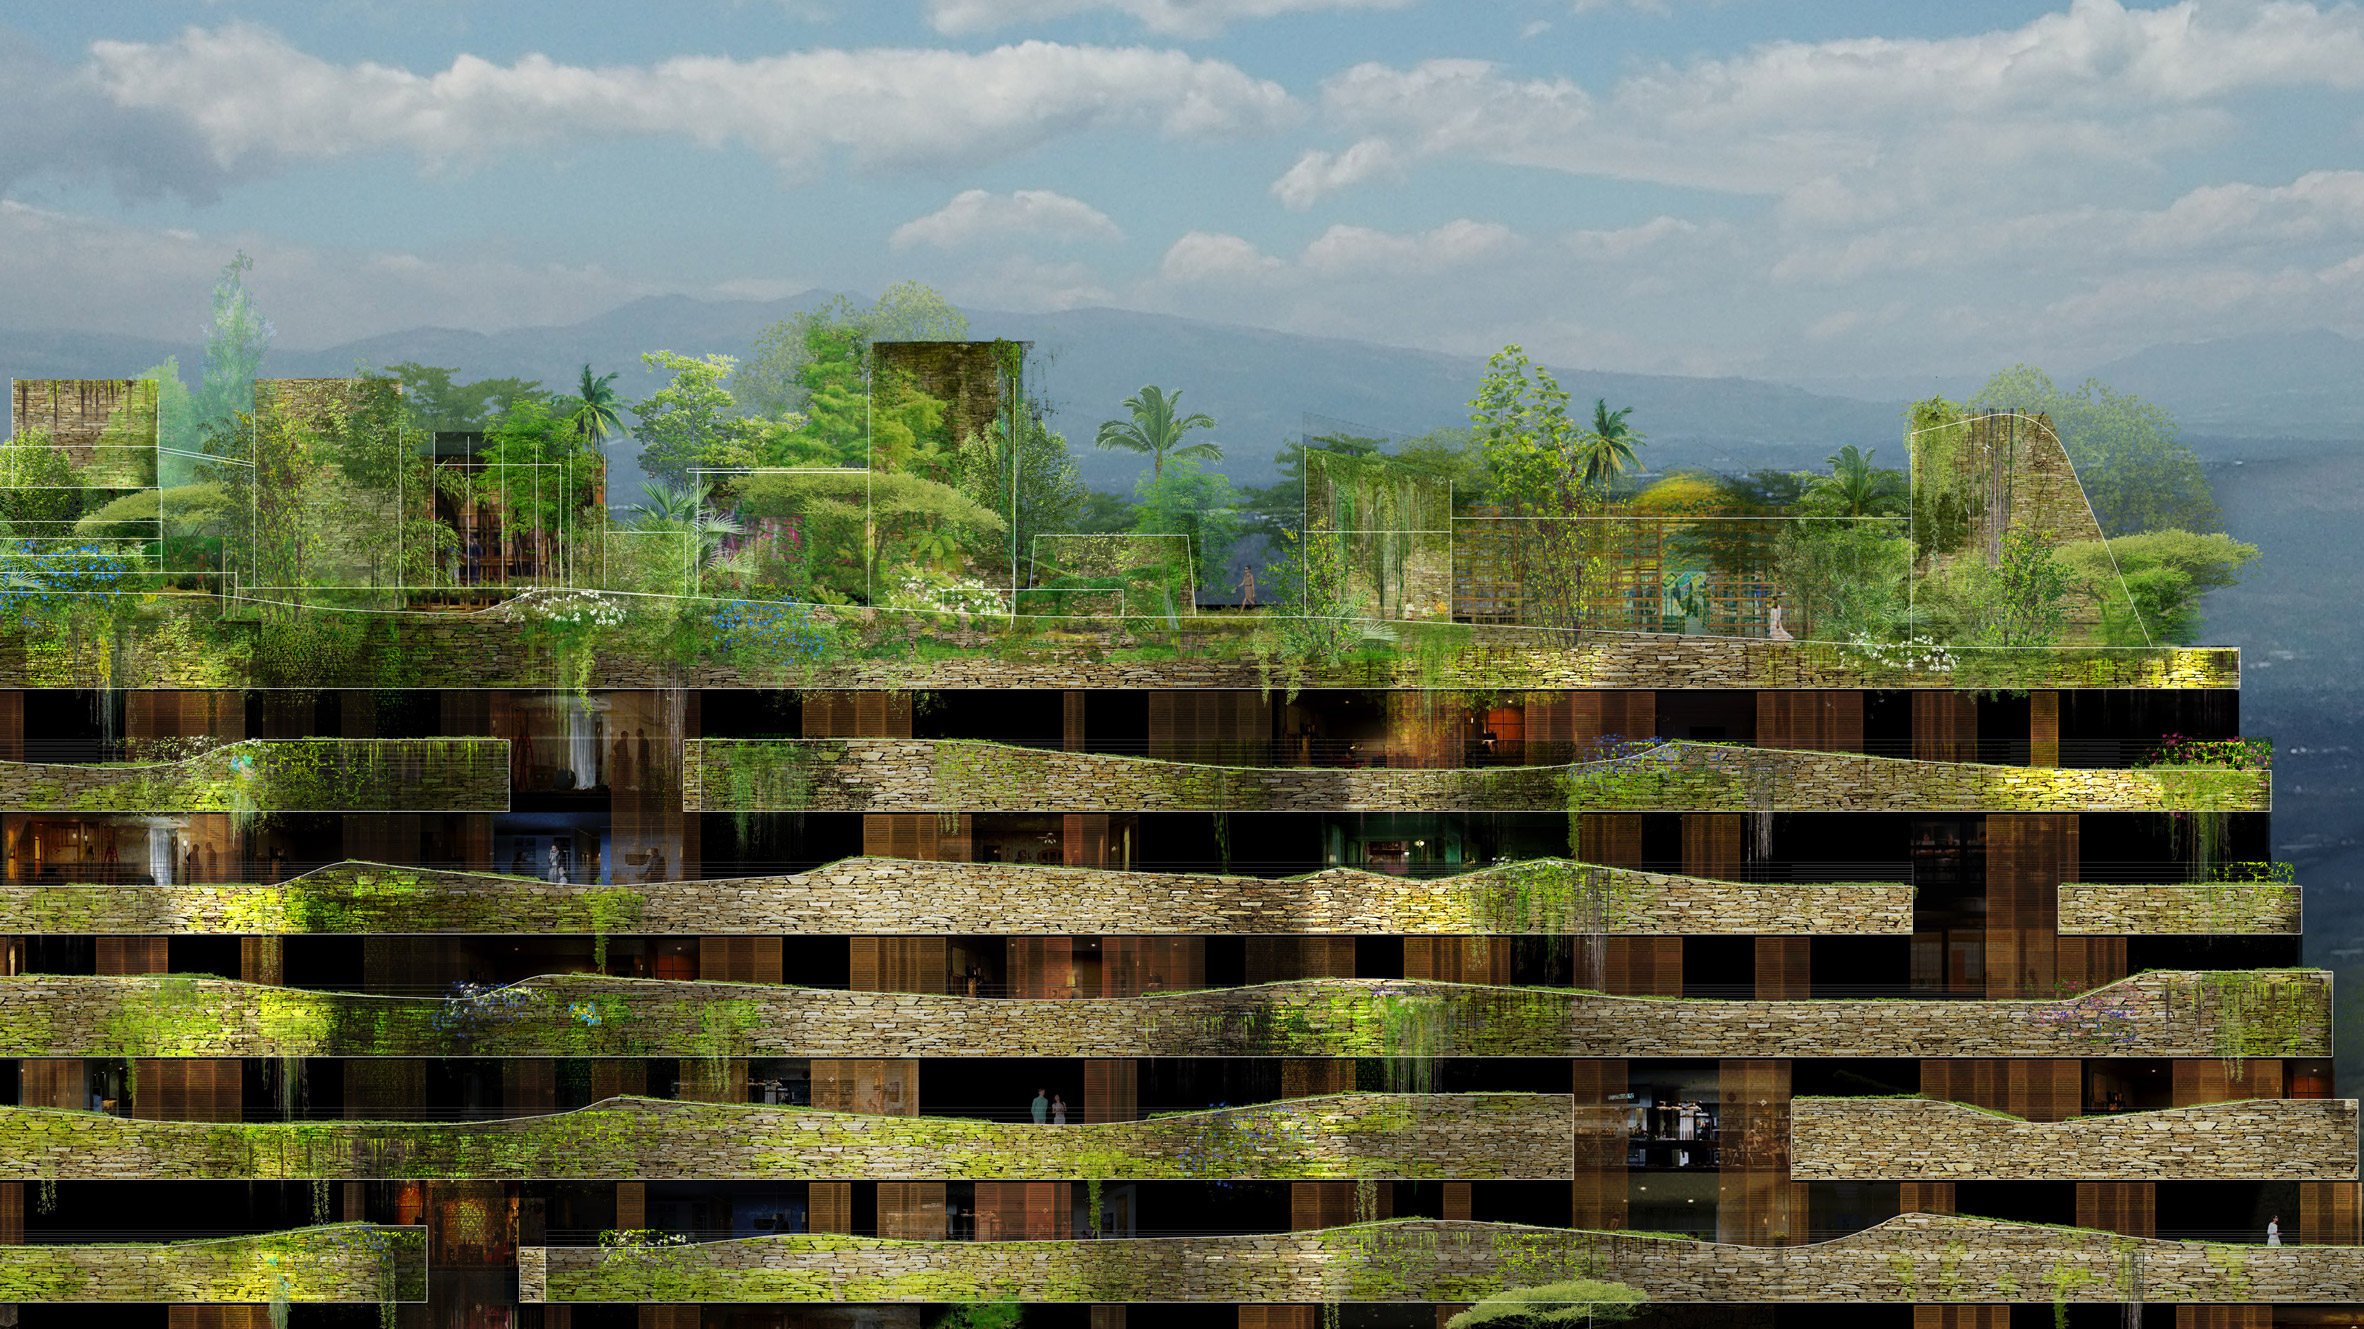 Atticus pierce Child Jean Nouvel releases new visuals of plant-covered Aquarela in Ecuador